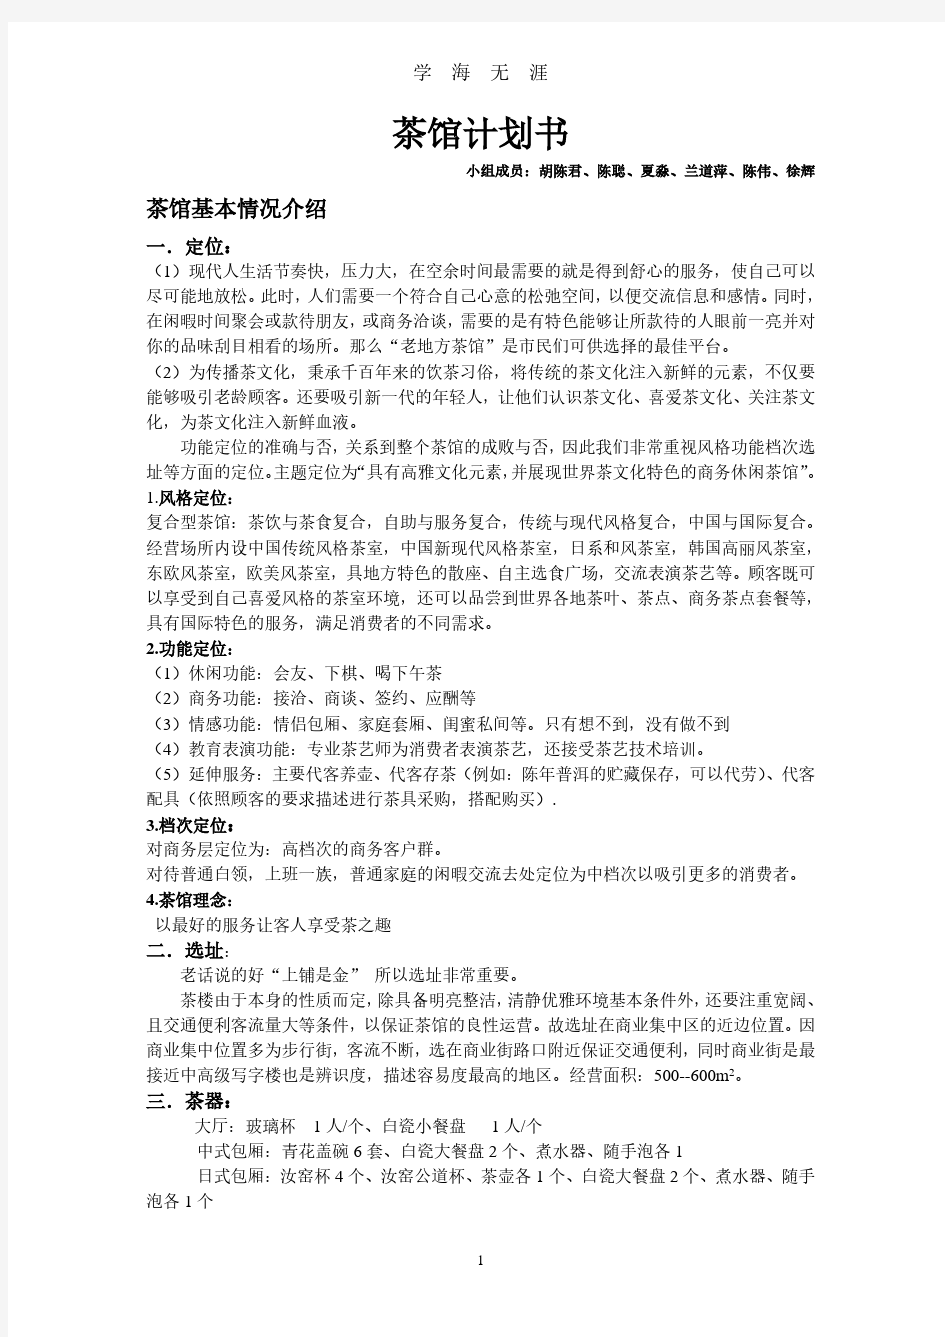 茶馆计划书(2020年7月整理).pdf